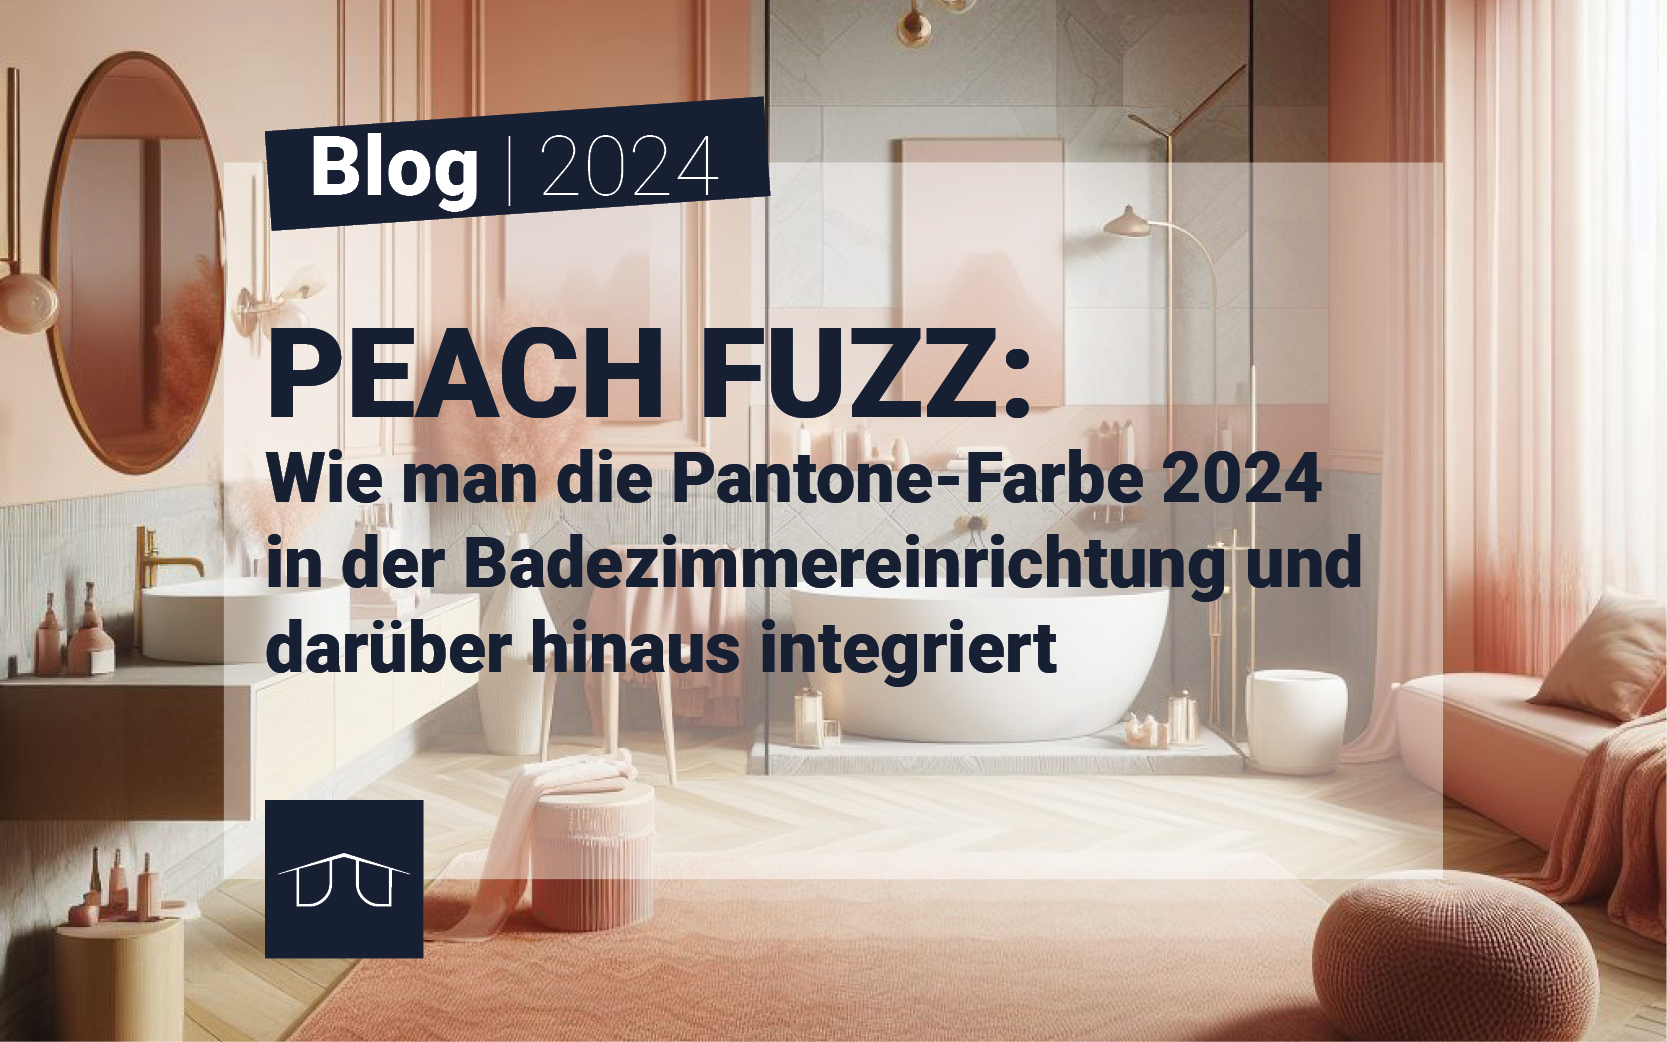 Peach Fuzz: Wie man die Pantone-Farbe 2024 in der Badezimmereinrichtung und darüber hinaus integriert